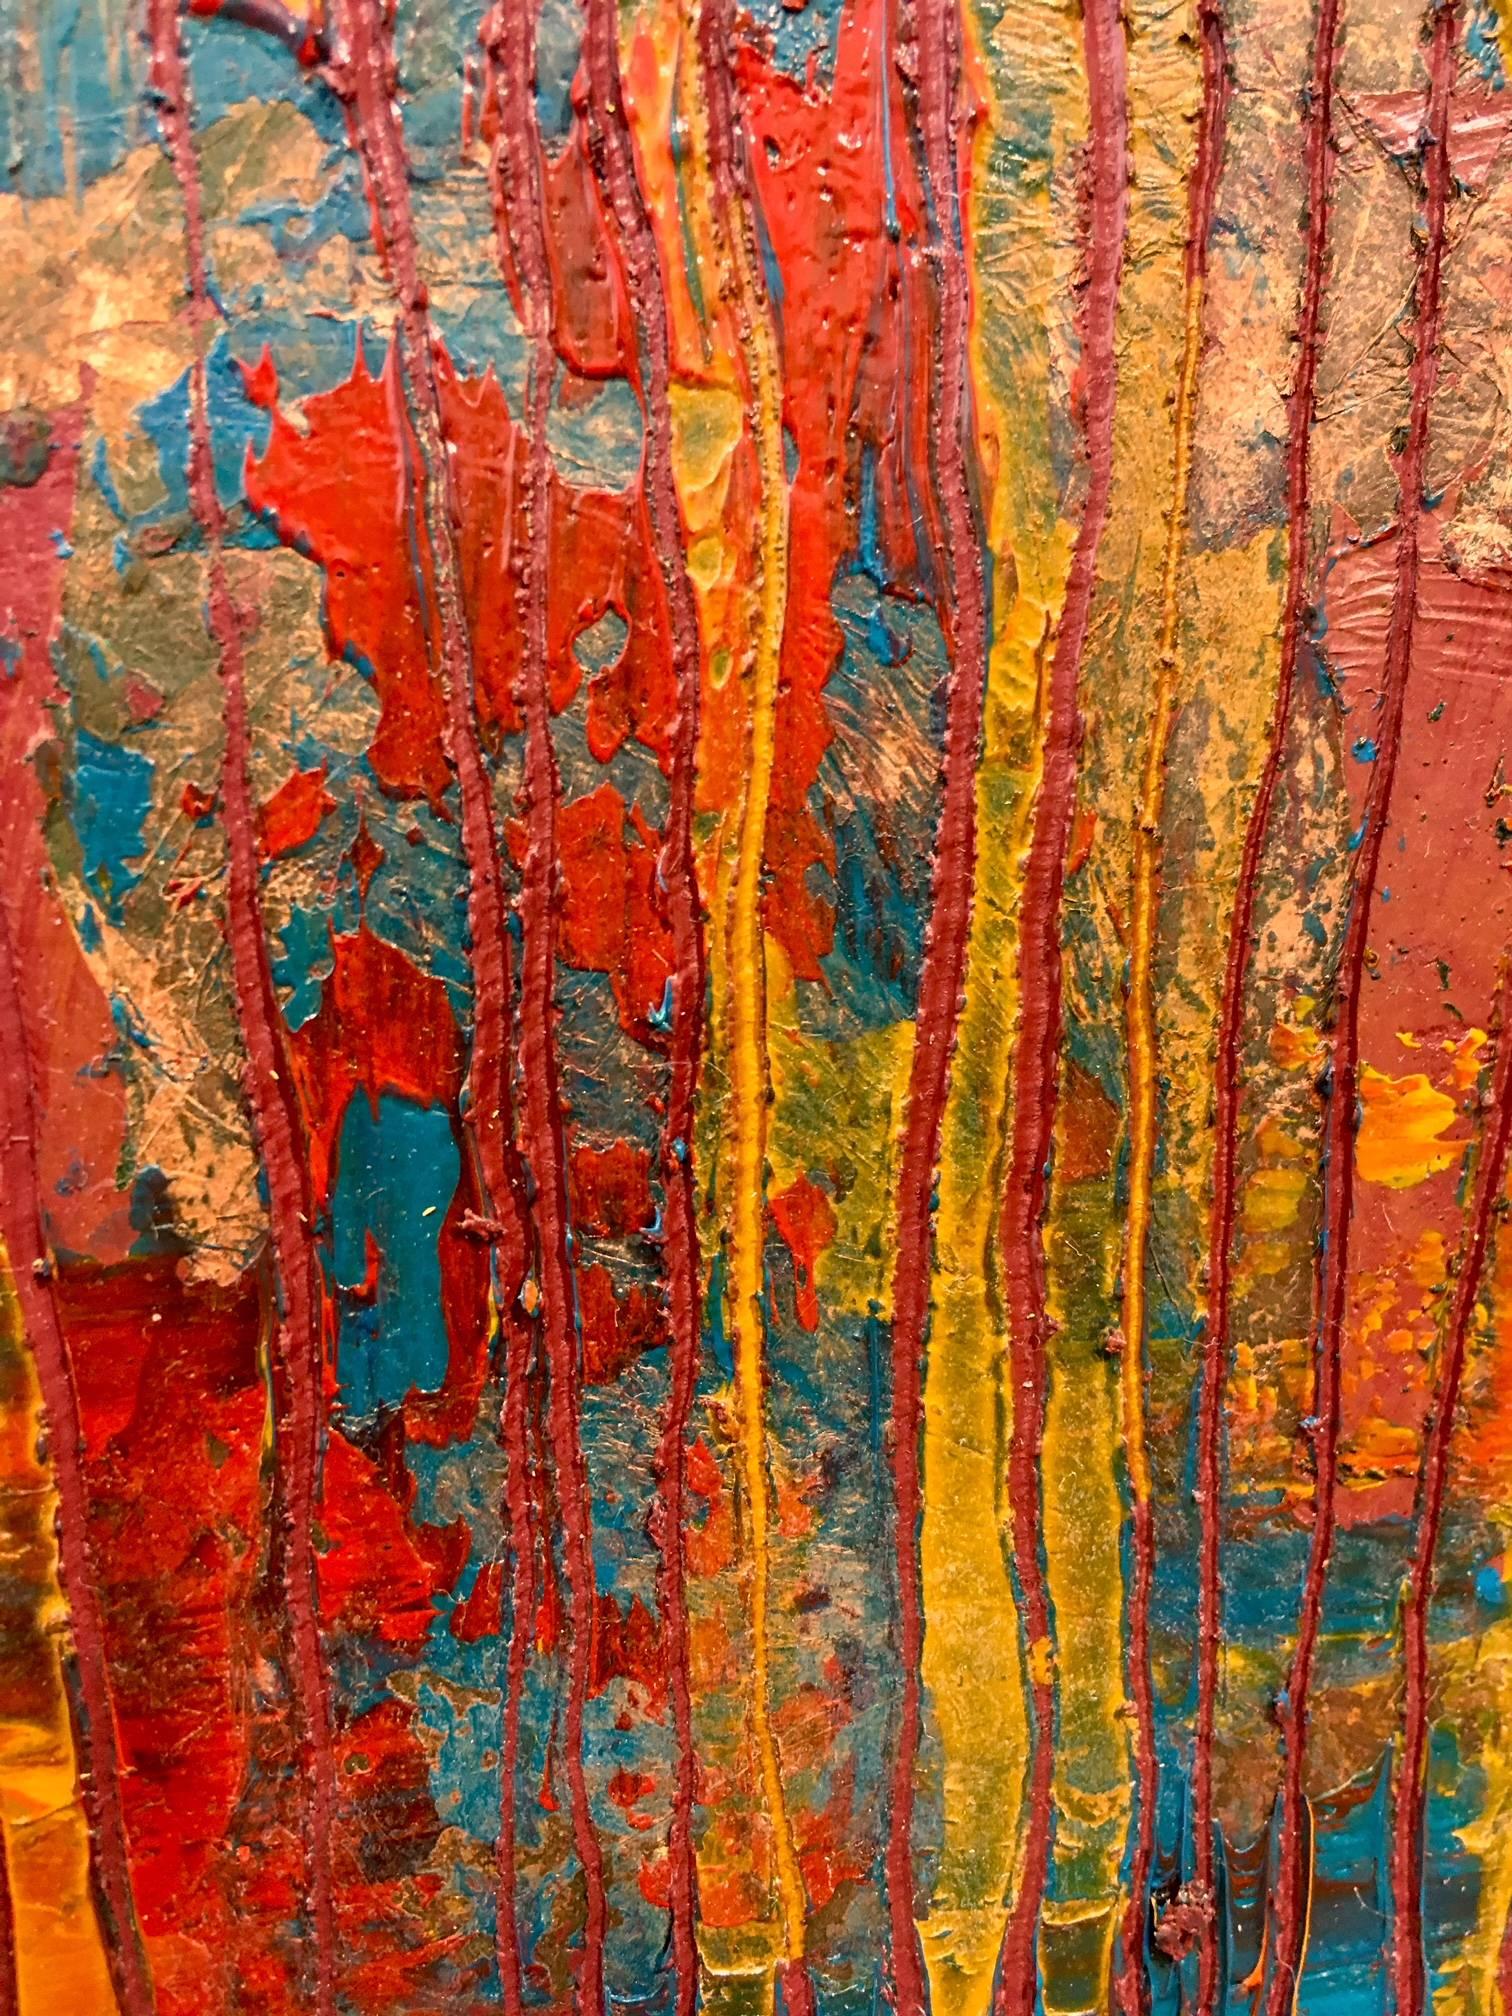 Zusammensetzung in Rot/Öl und Blattmetall (Abstrakter Expressionismus), Painting, von Frédéric Choisel